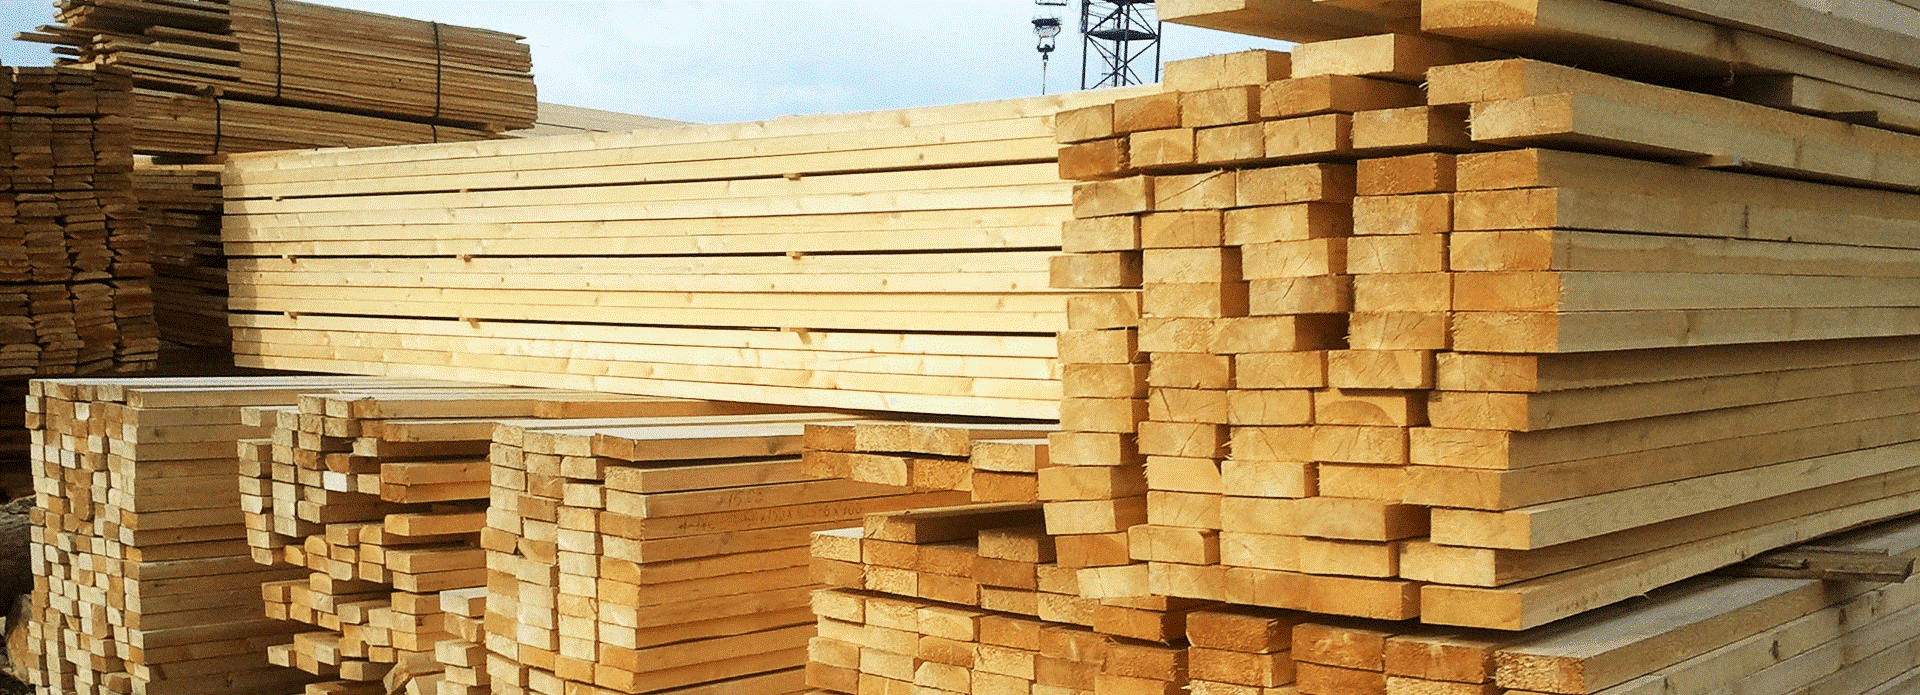 Дефицит древесины  — проблема для транспорта и логистики поддонов